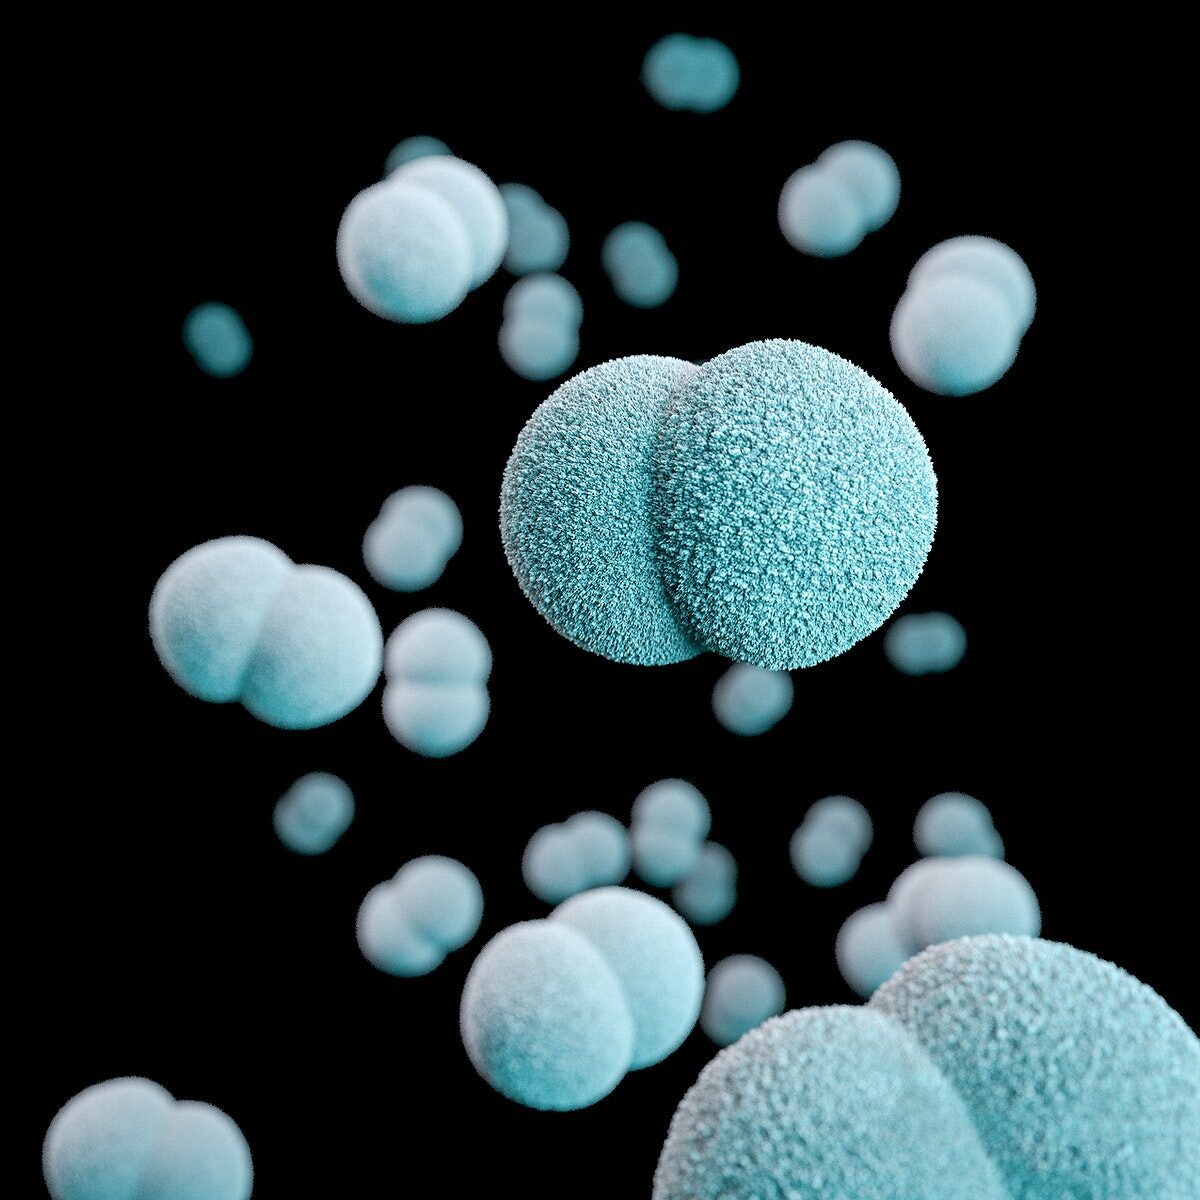 Imagen 3d de un grupo de diplococos gramnegativos neisseria meningitides